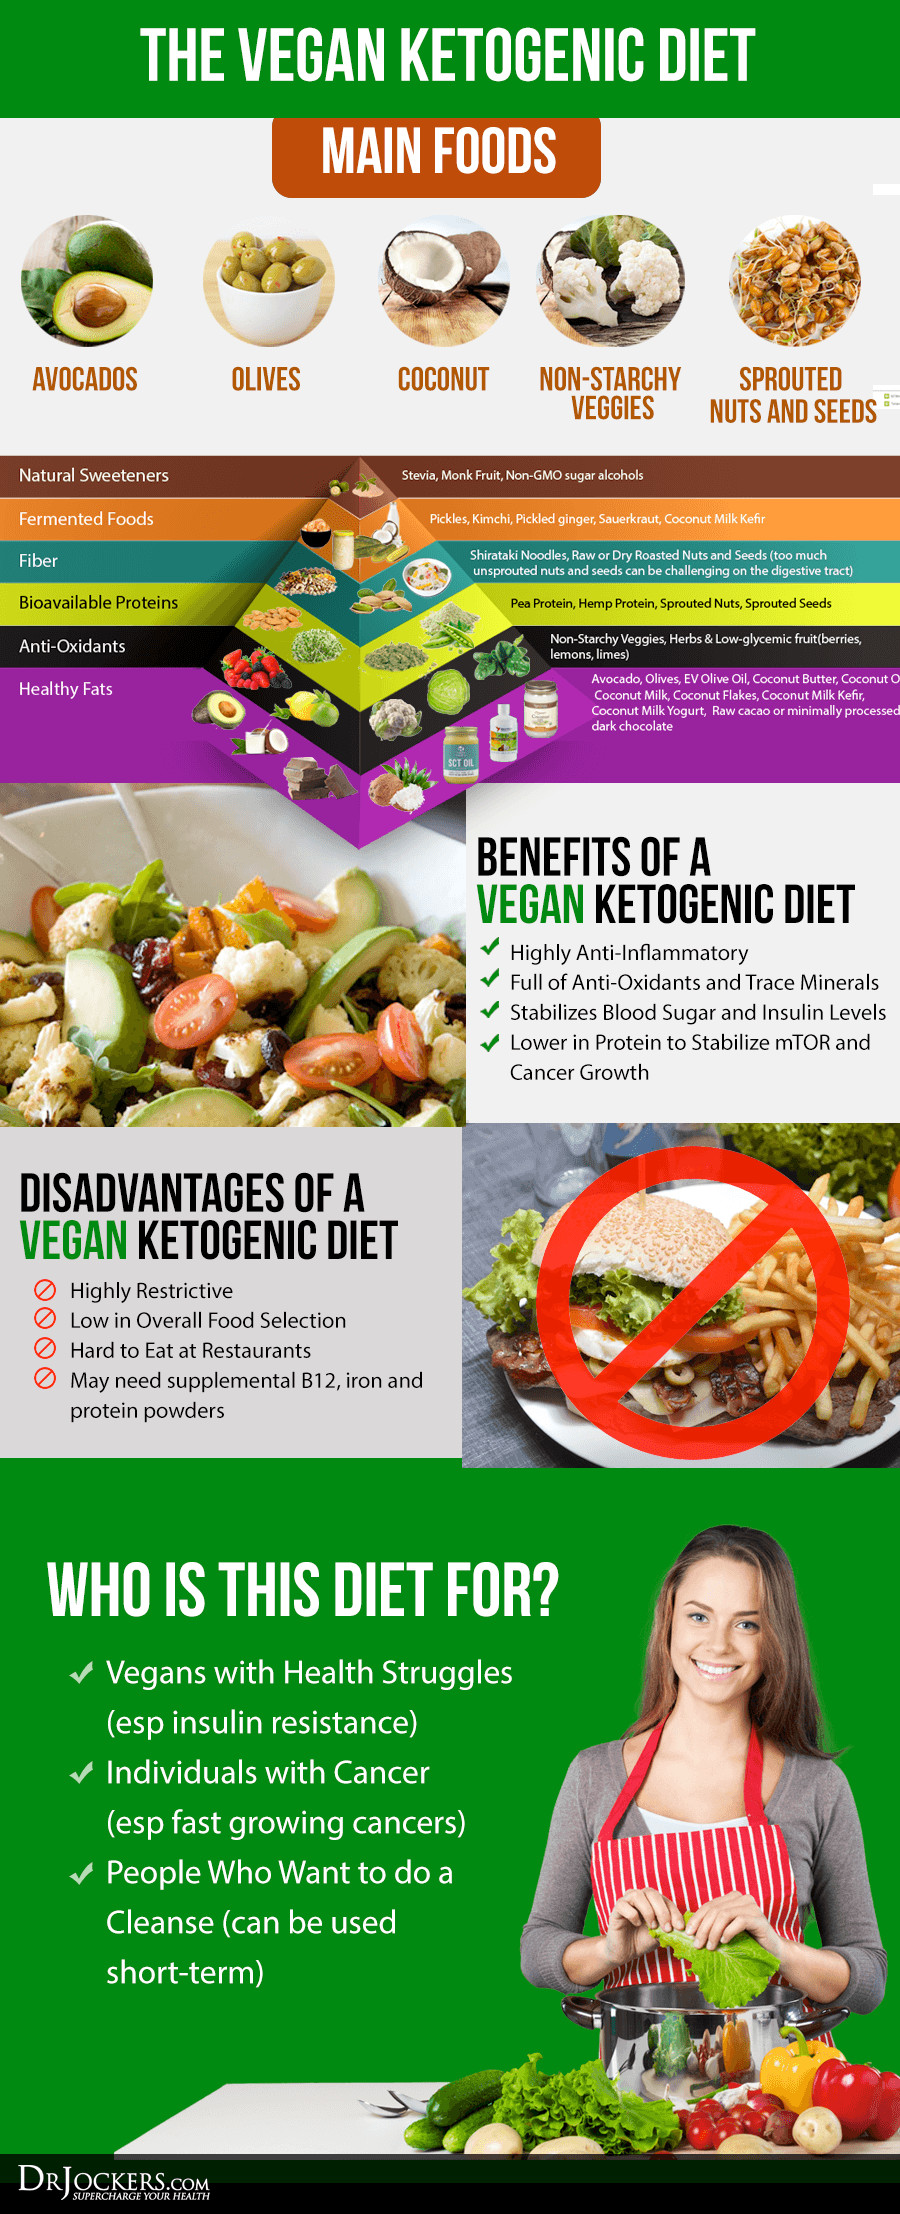 Keto Diet Food List Vegan How To Follow A Vegan Ketogenic Diet DrJockers